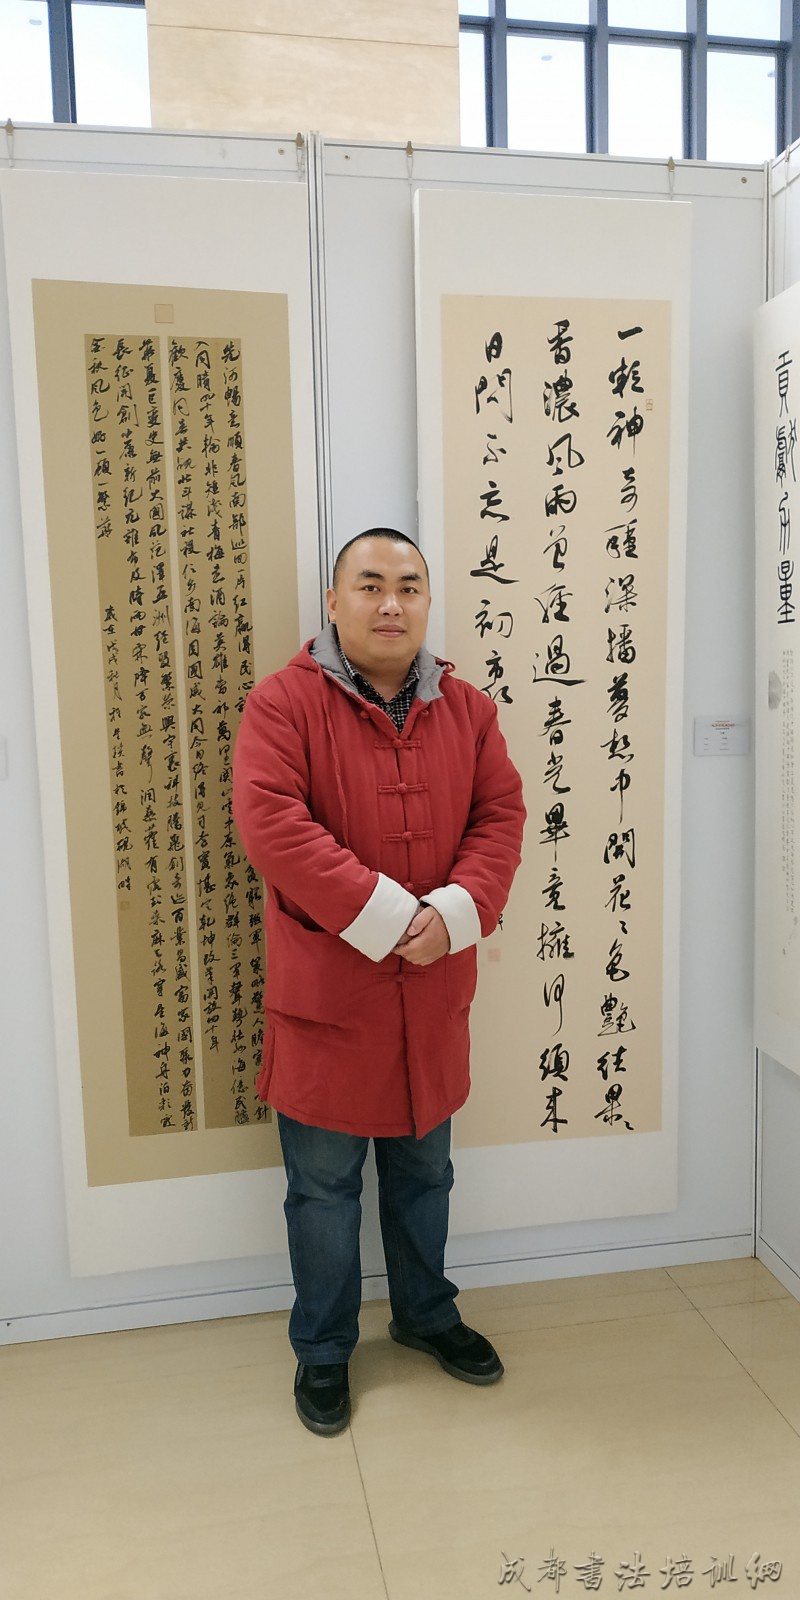 何晓巍出席武侯区纪念改革开放40周年书画展 –